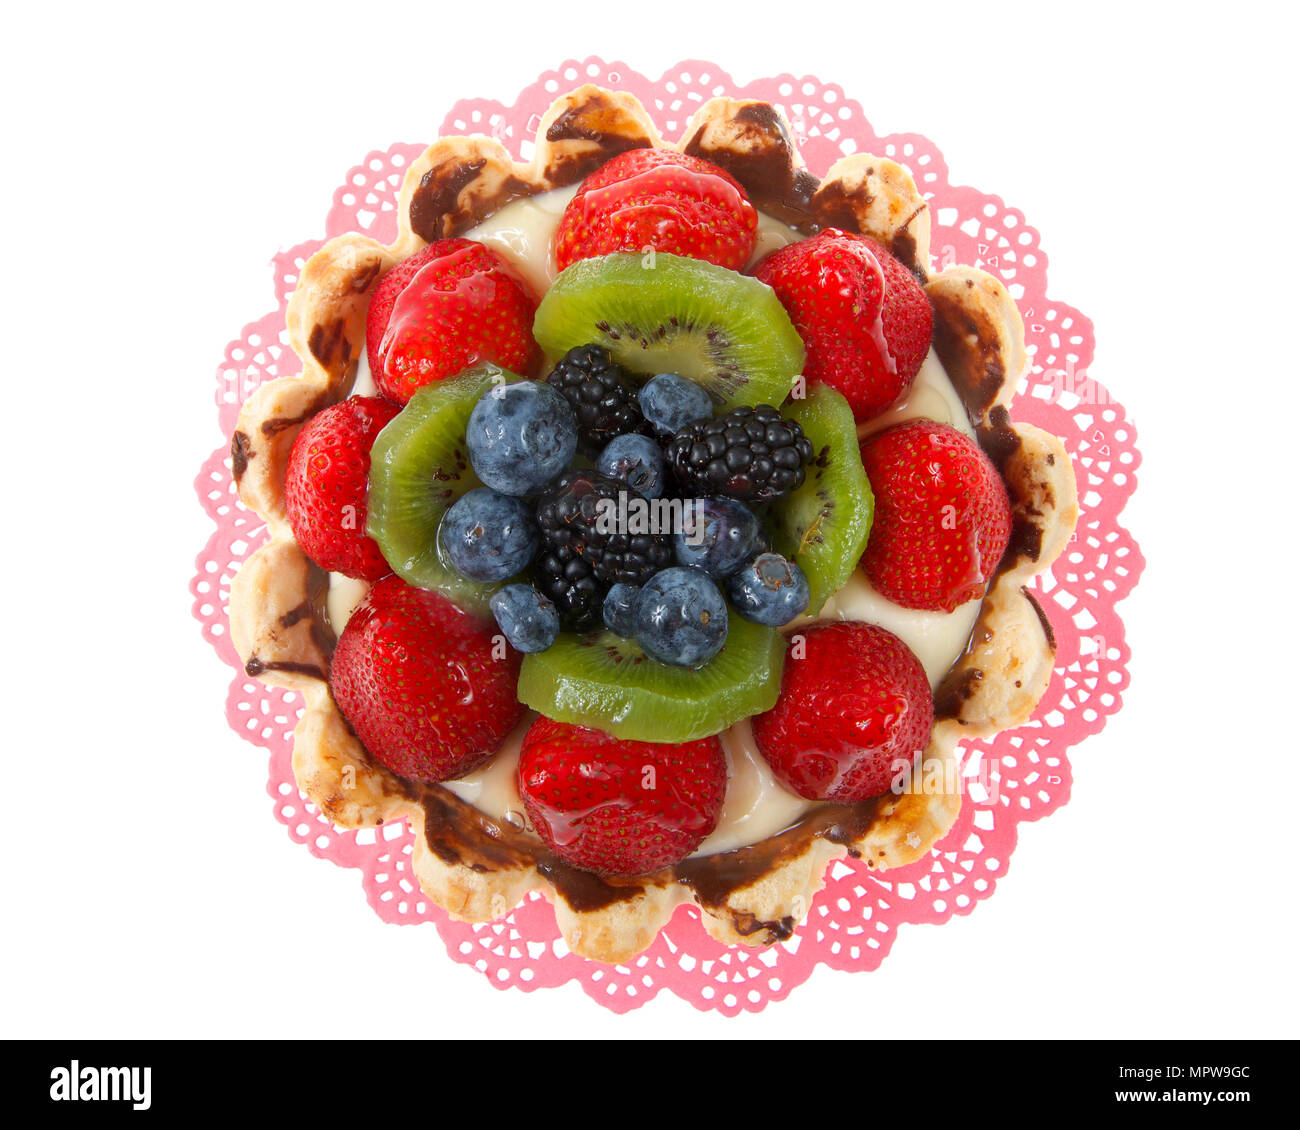 Tarte aux fruits d'été frais avec des fraises, kiwis, myrtilles, boysenberries sur un napperon rose isolé sur fond blanc Banque D'Images